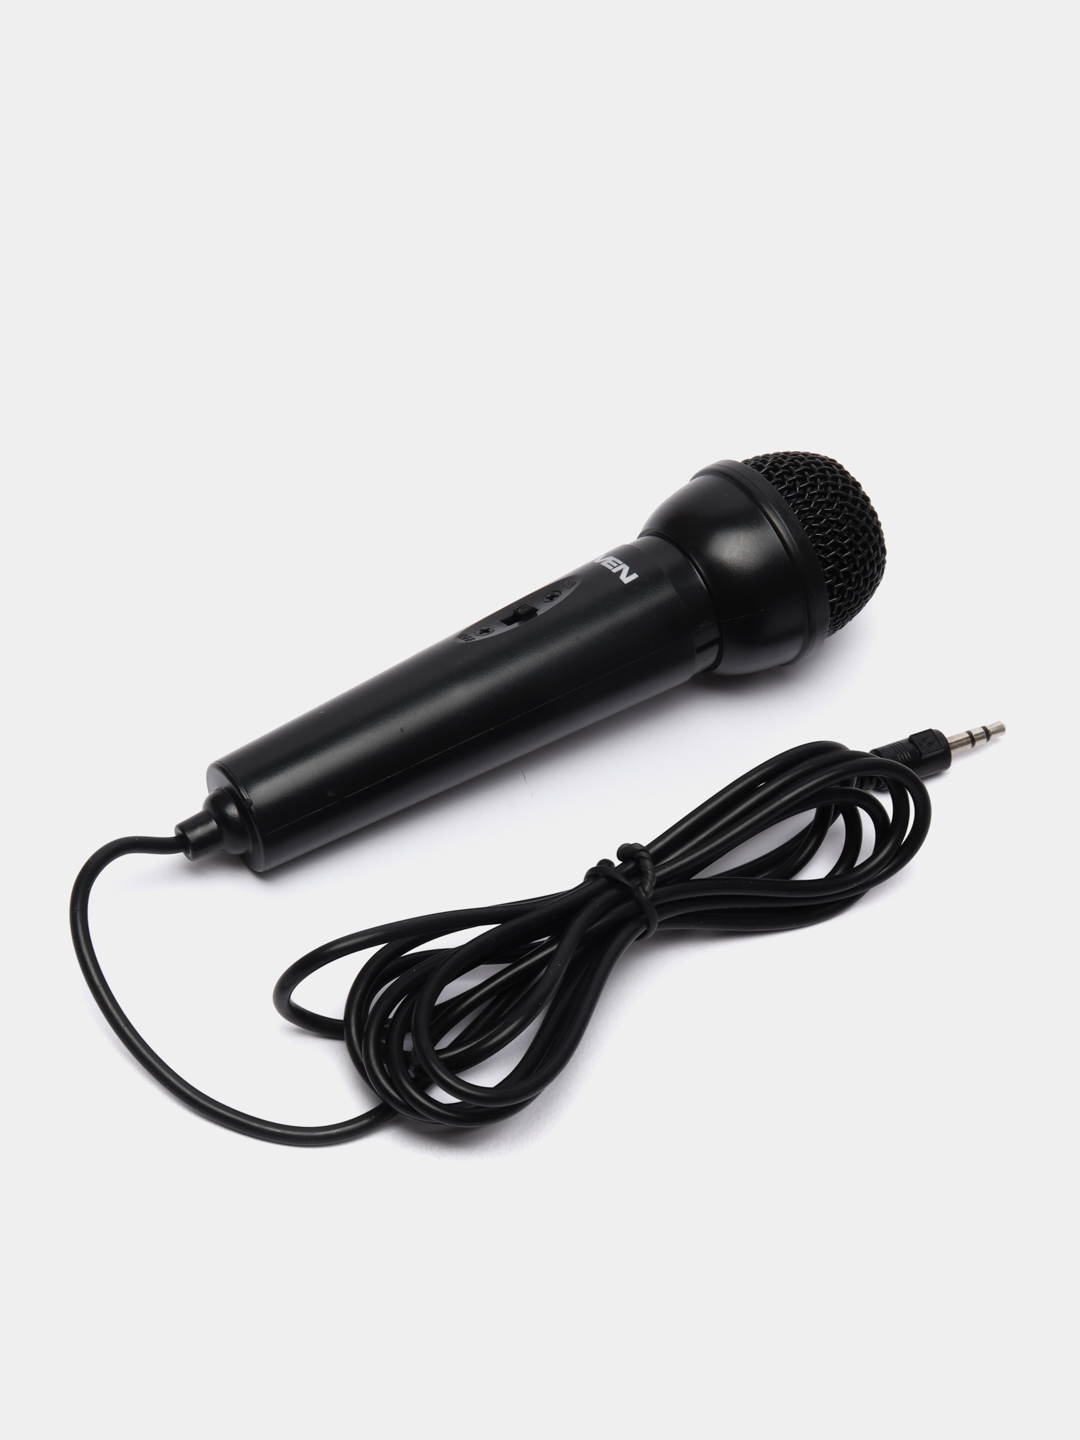 Микрофон Sven MK-500 черный